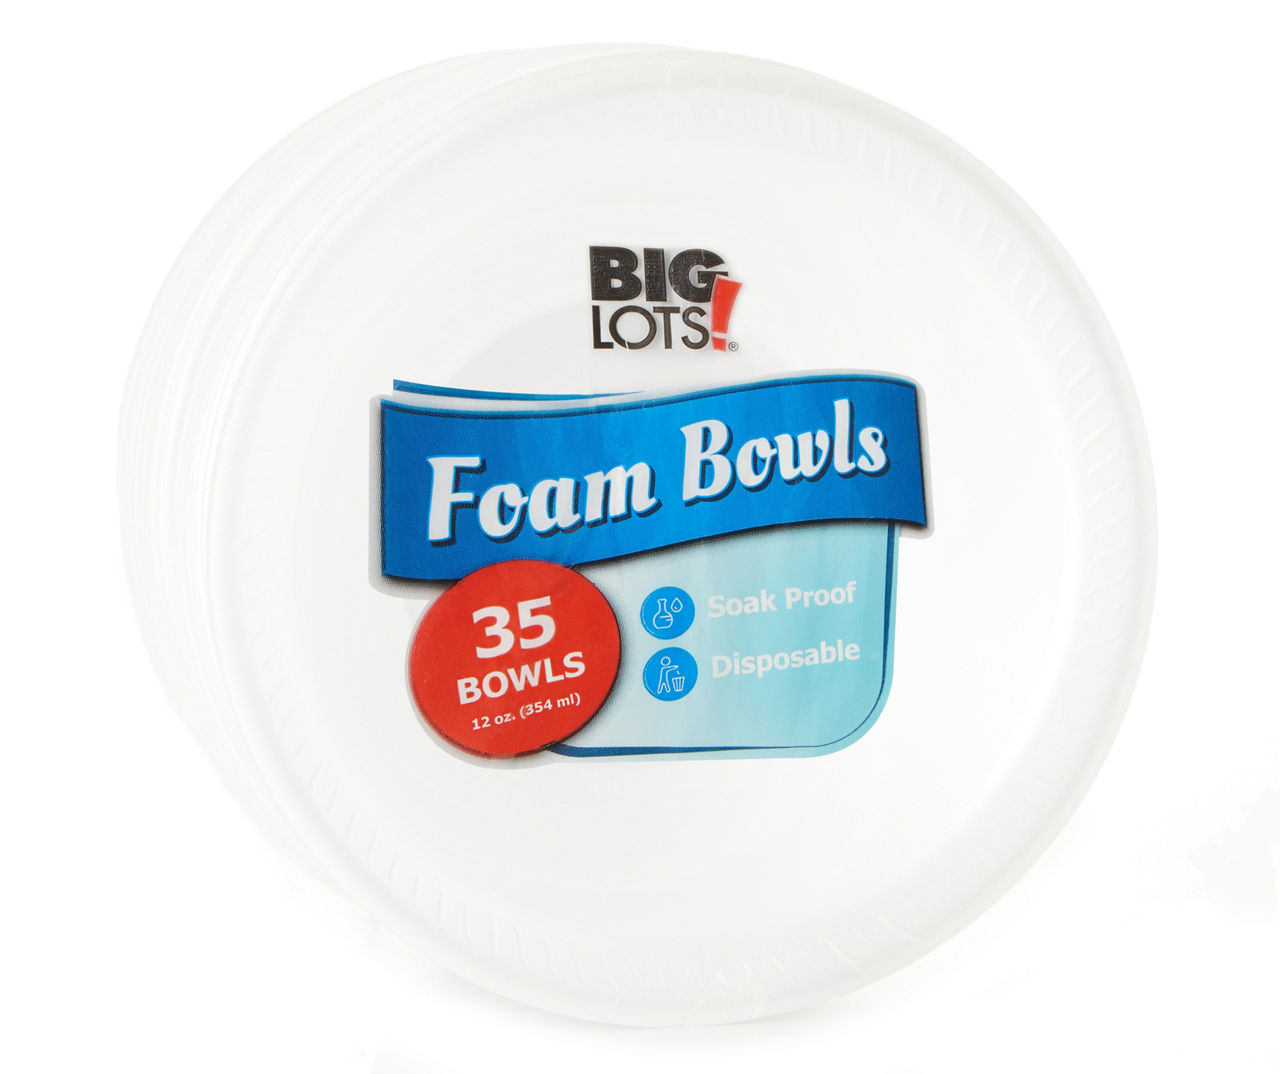 Big Lots Foam Bowls, 35 Count, 12 Oz.